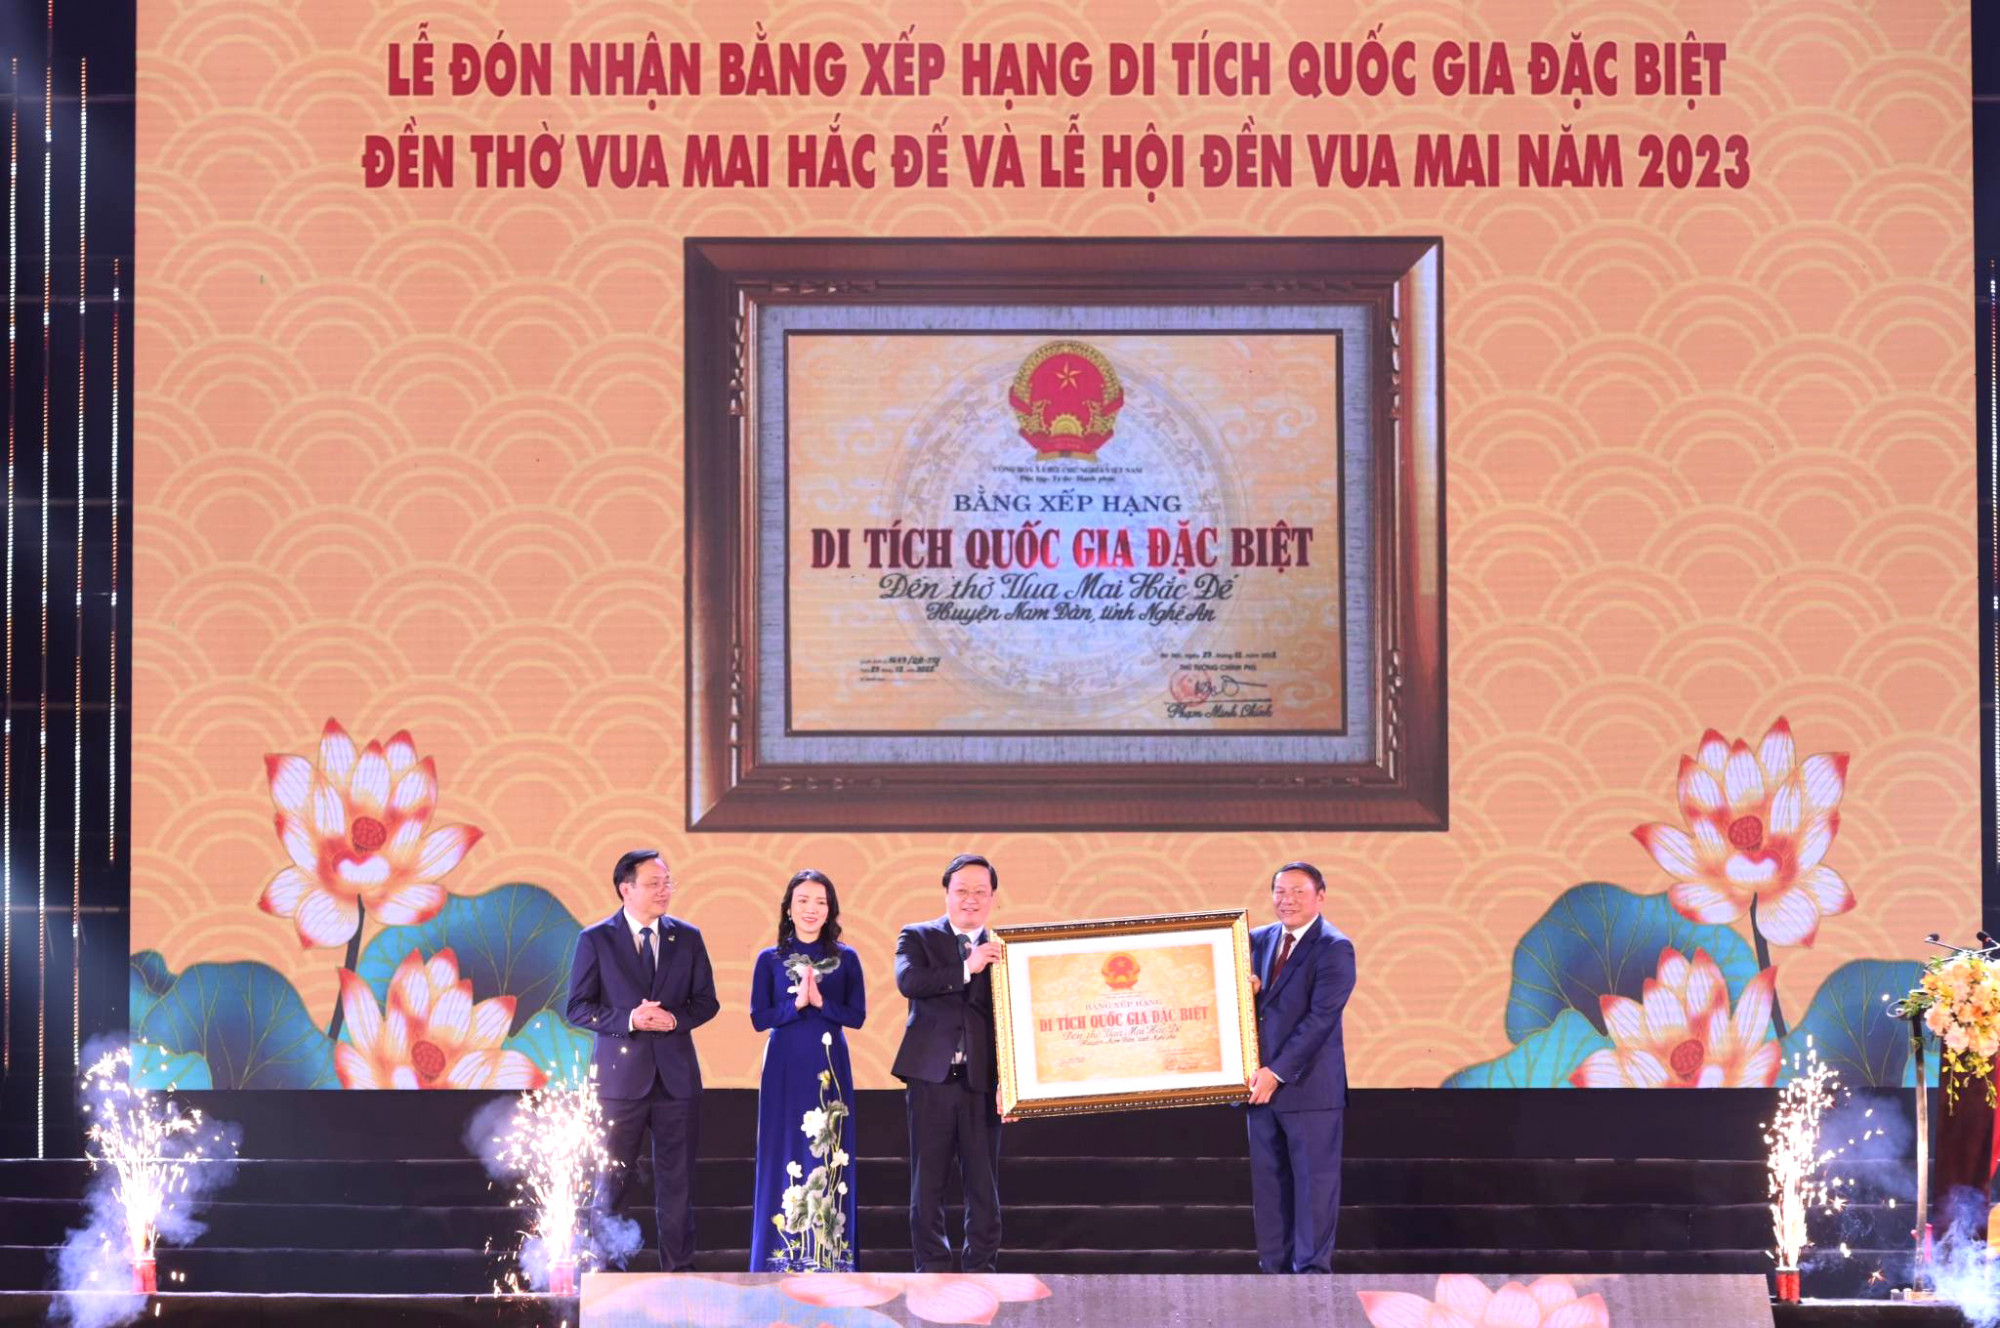 Bộ trưởng Bộ Văn hoá - Thể thao và Du lịch Nguyễn Văn Hùng đã trao Bằng xếp hạng di tích Quốc gia đặc biệt Đền thờ Vua Mai Hắc Đế đến lãnh đạo tỉnh Nghệ An - Ảnh: Khánh Trung